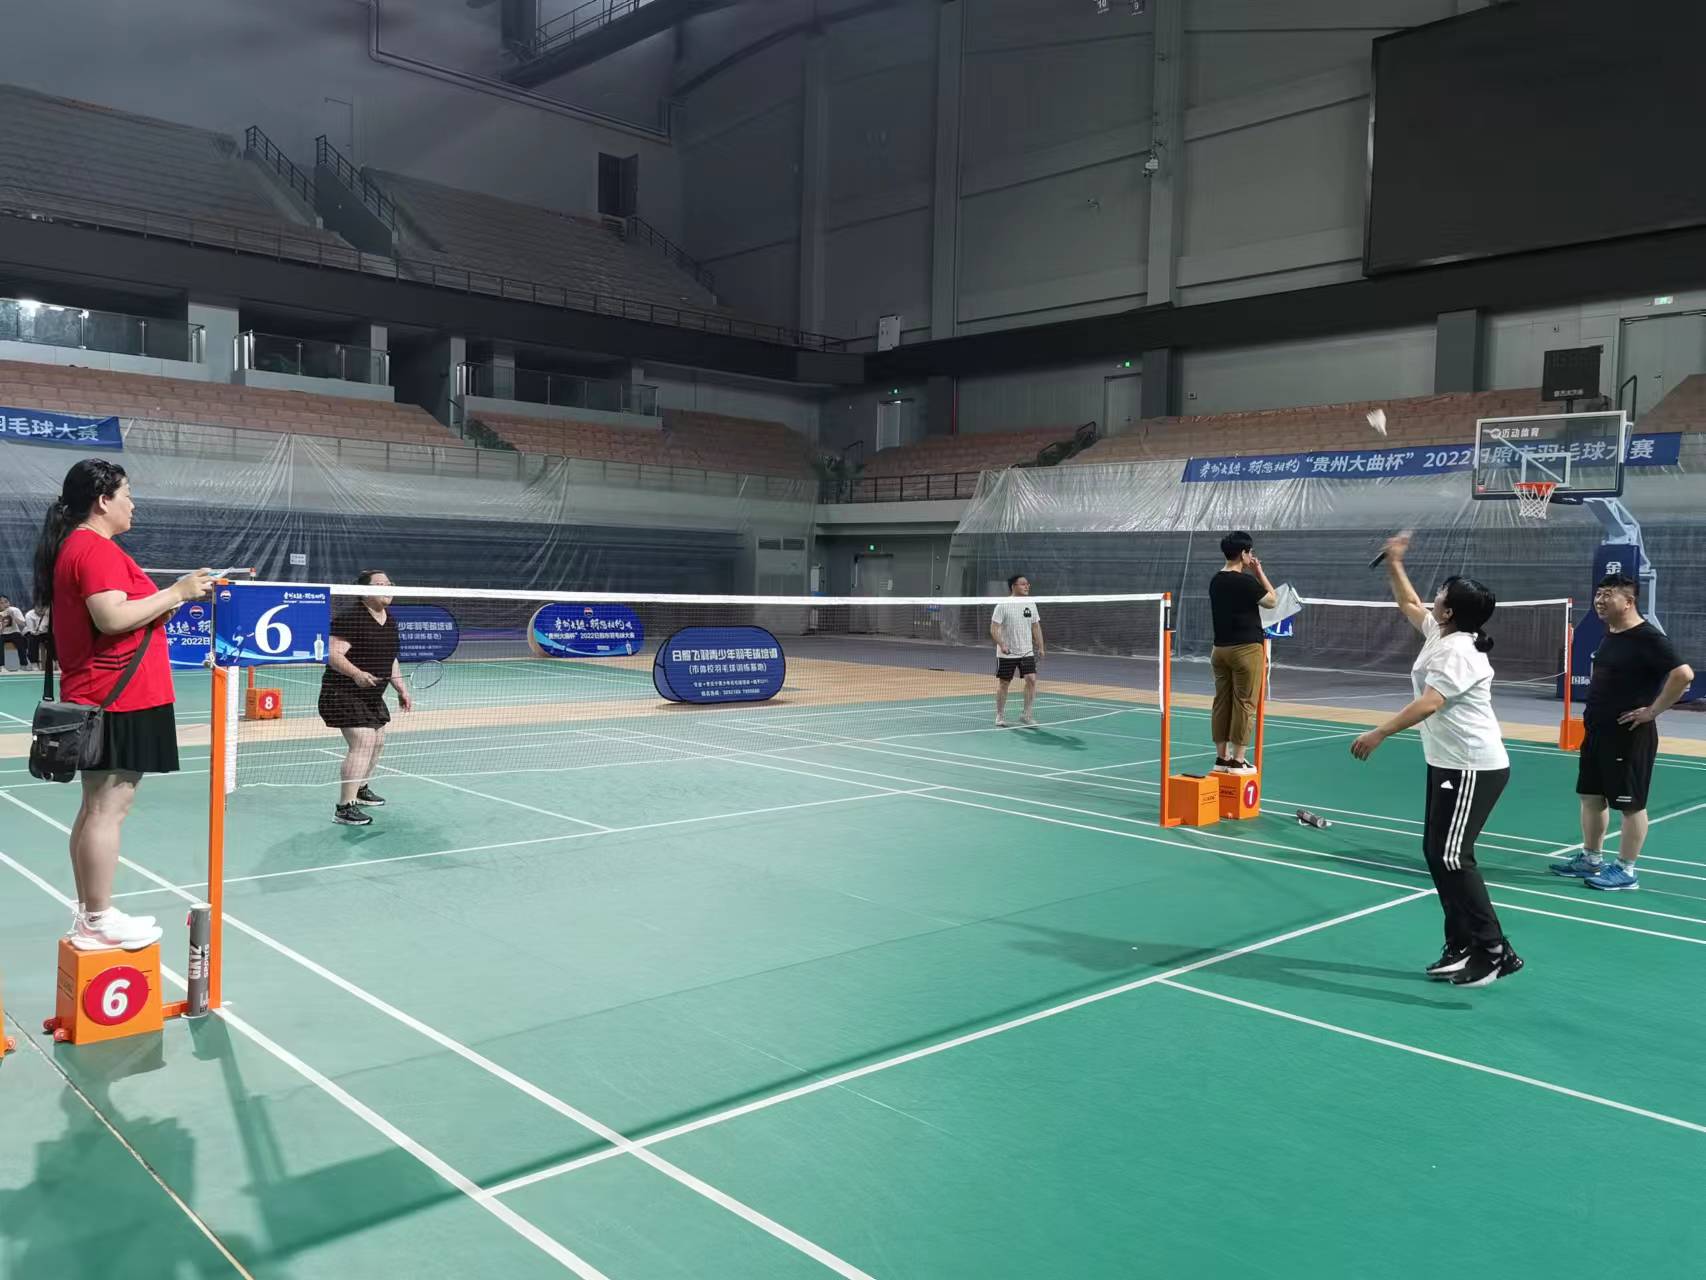 山东华升供应链管理有限公司第一届羽毛球比赛顺利举办